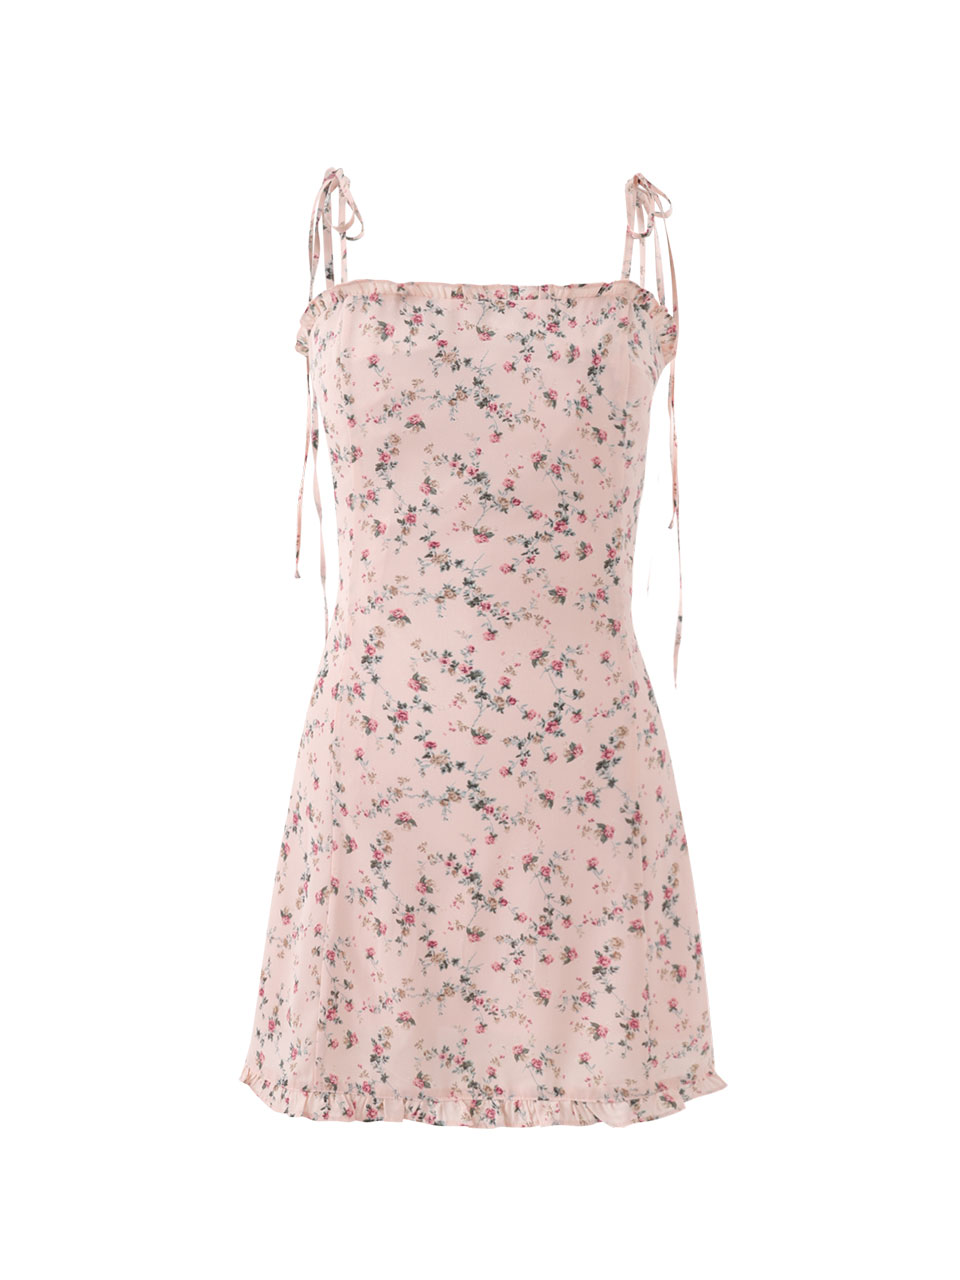 Frill mini dress (pink)